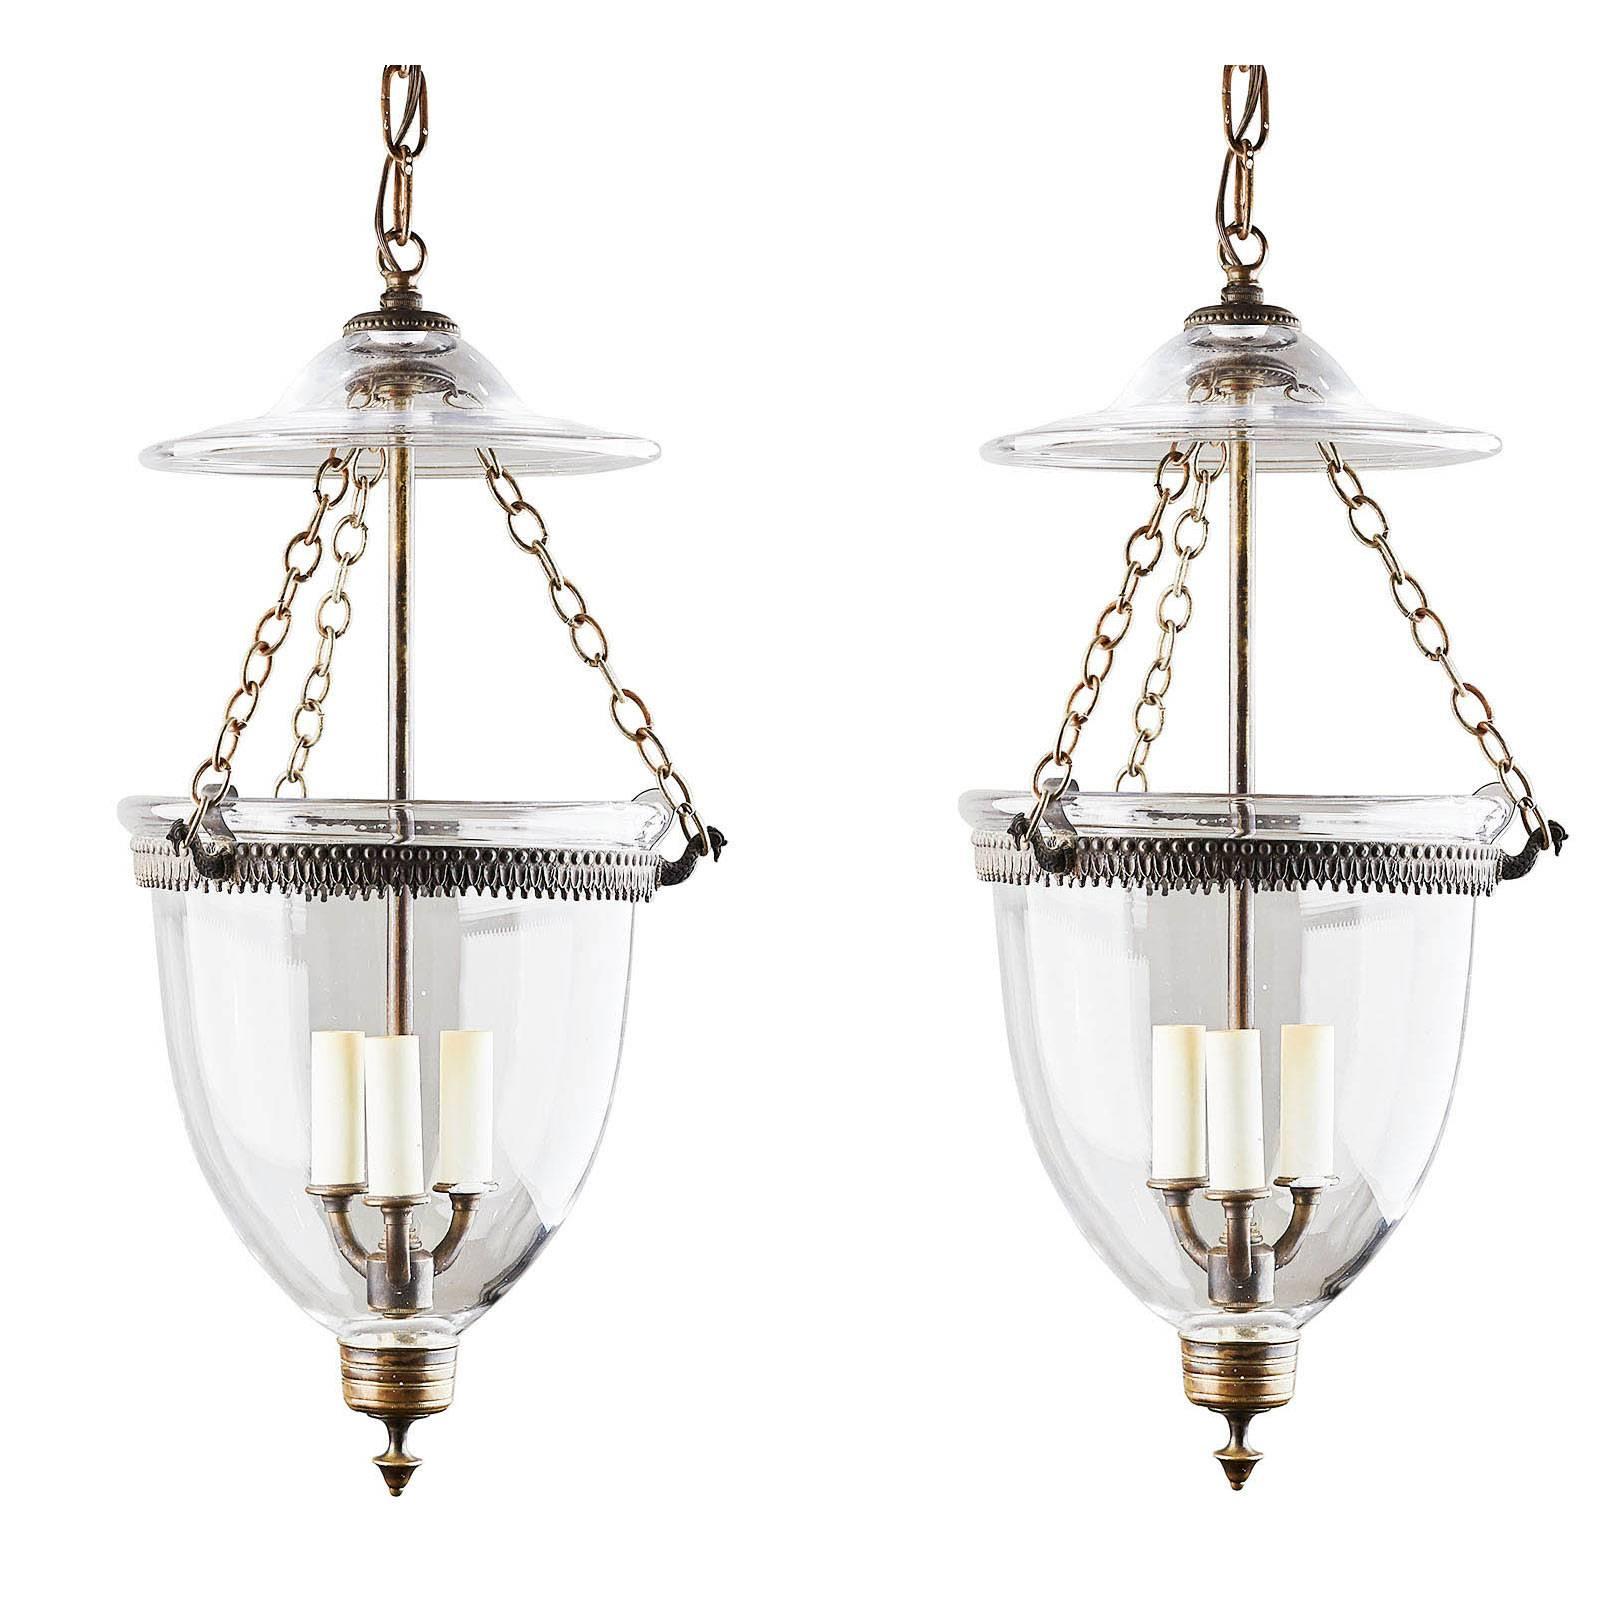 Pair of Bell Jar Lanterns, circa 1890